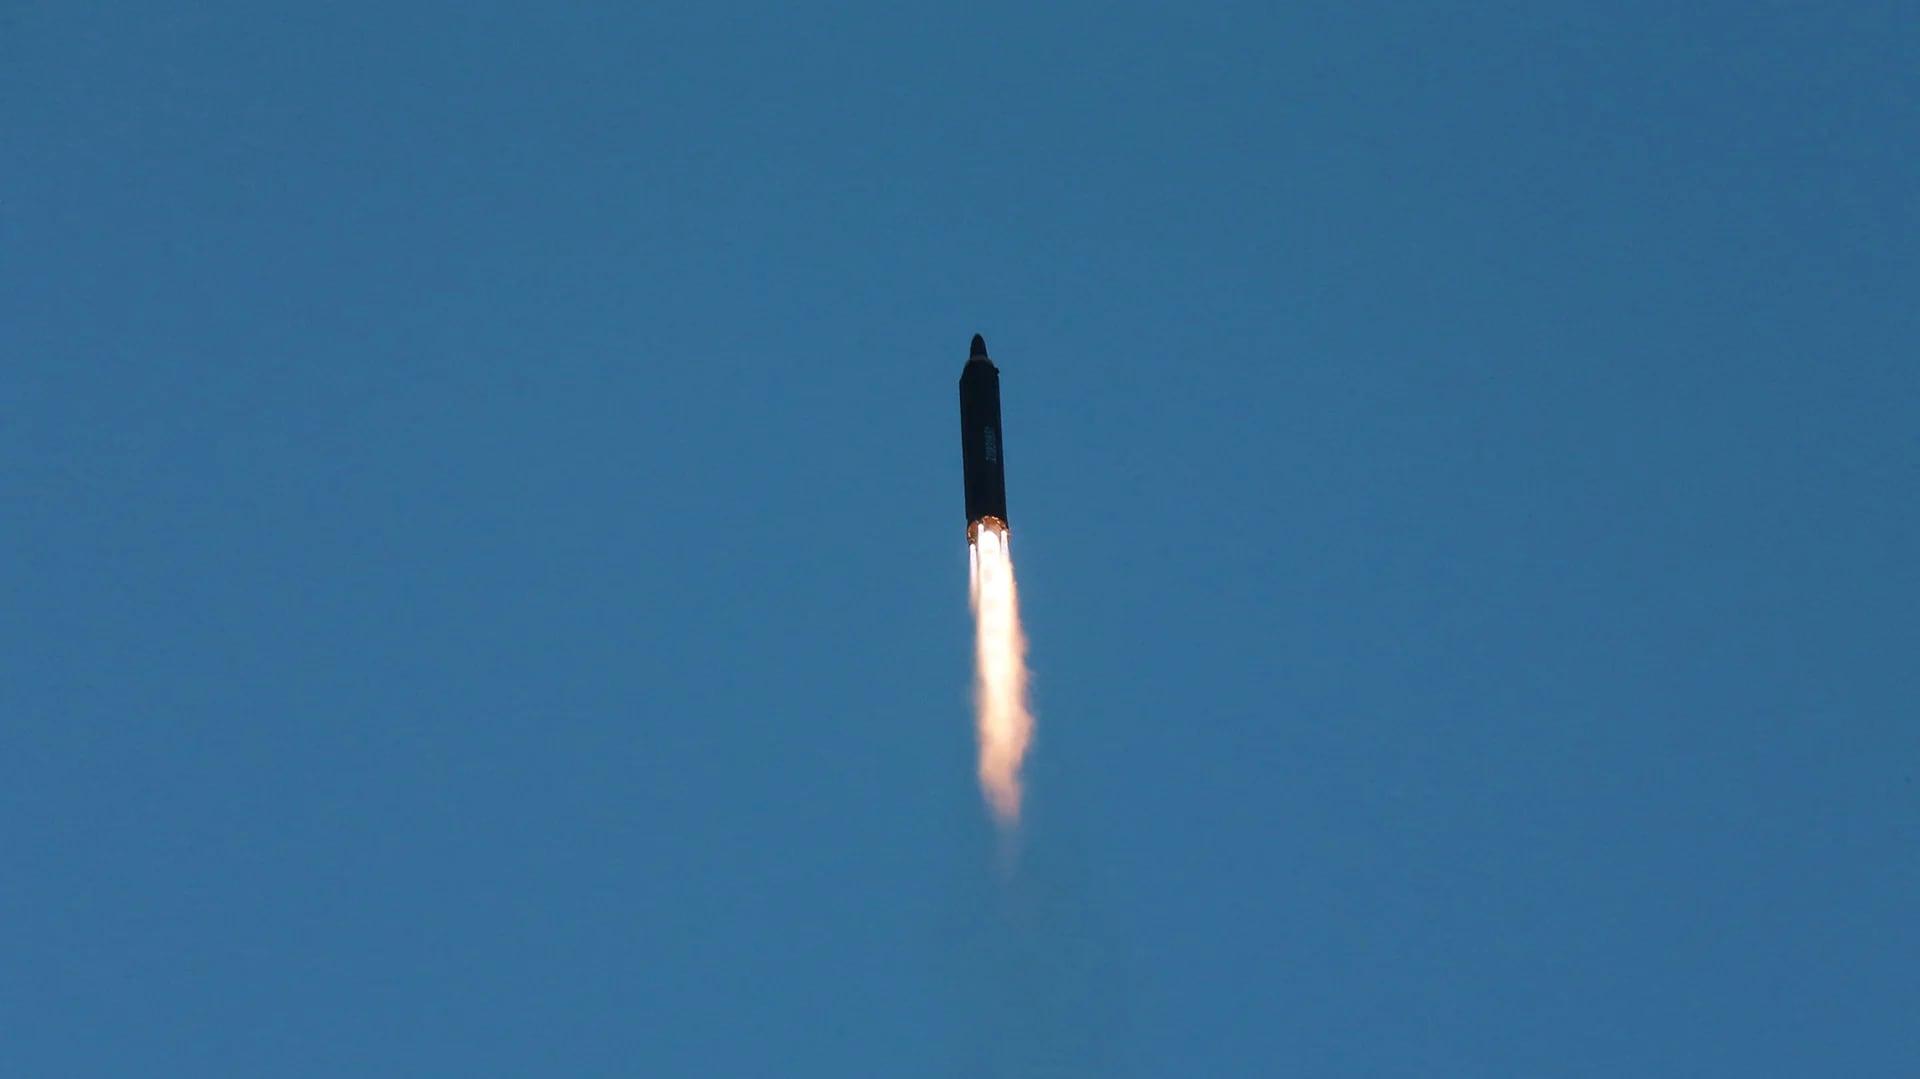 Foto del misil de largo alcance Hwasong-12, lanzado por el régimen norcoreano la semana pasada. (Archivo)